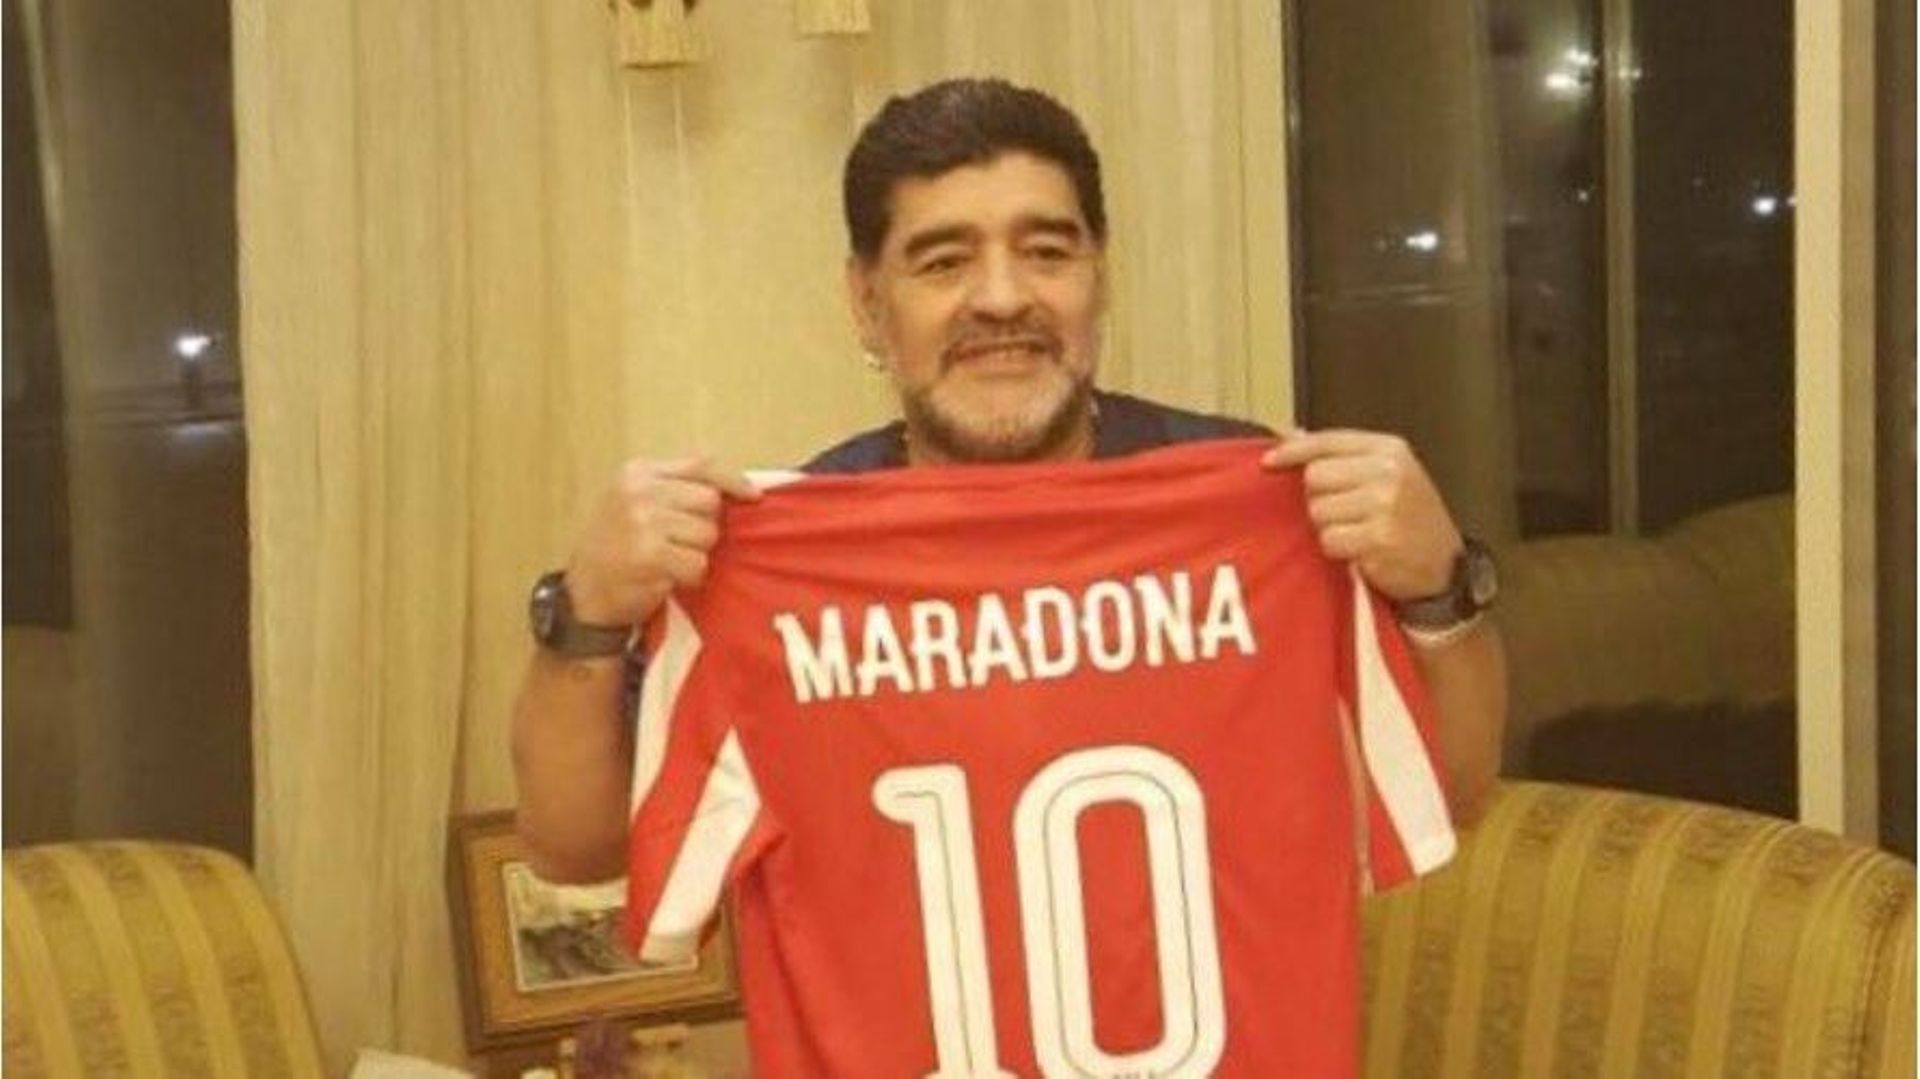 Maradona entraîneur de l'équipe émiratie d'Al Fujairah